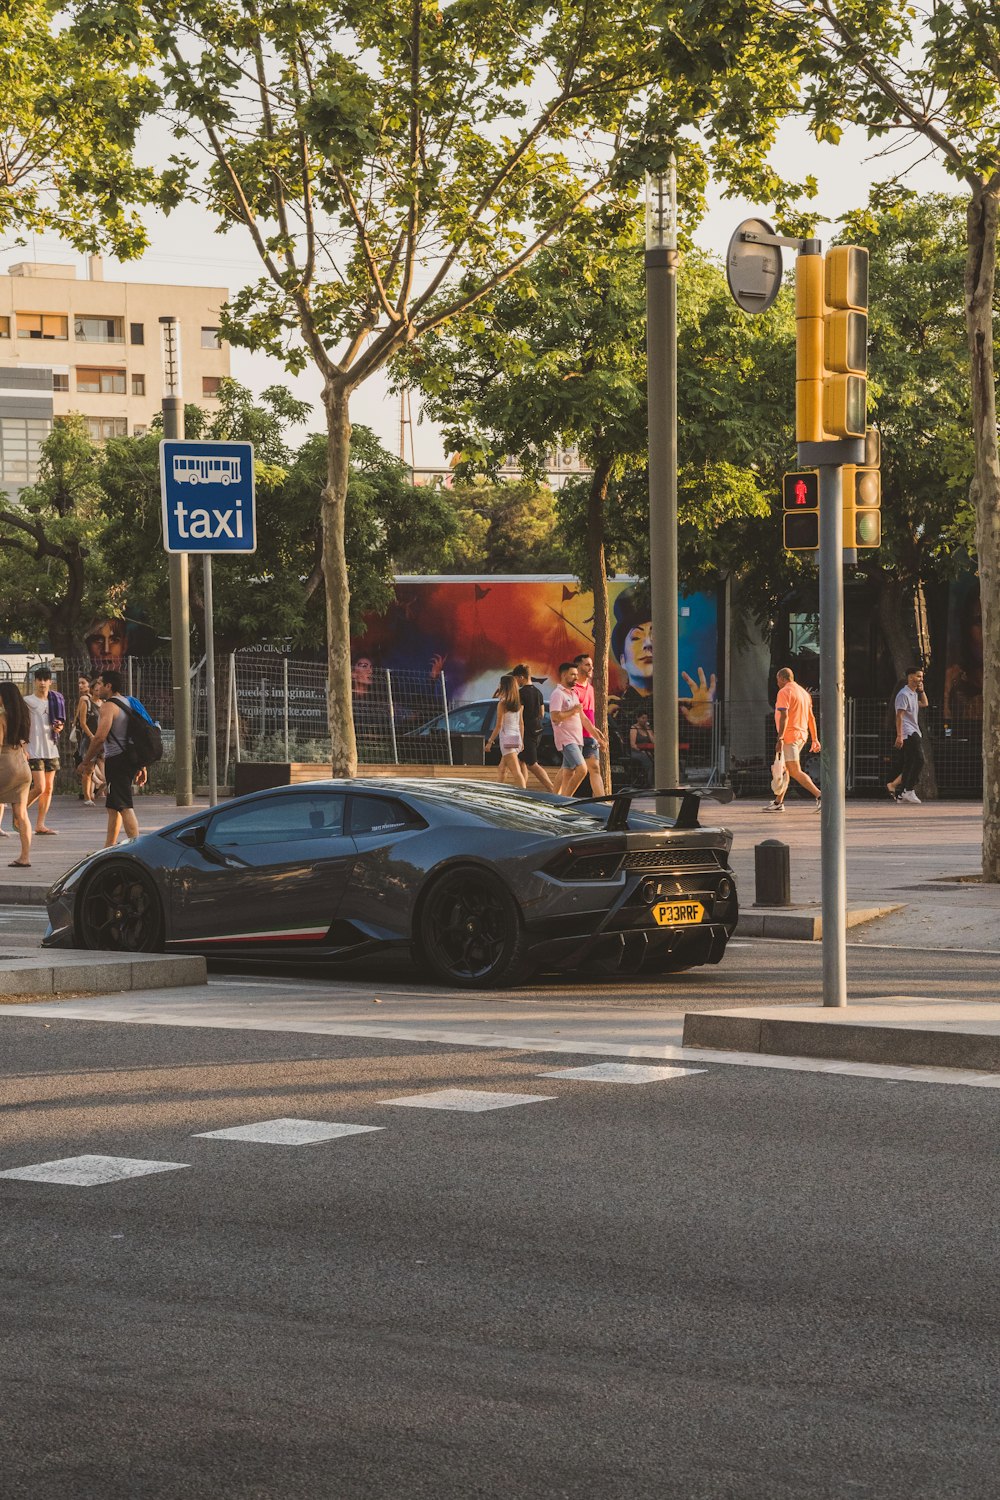 a black car on the street